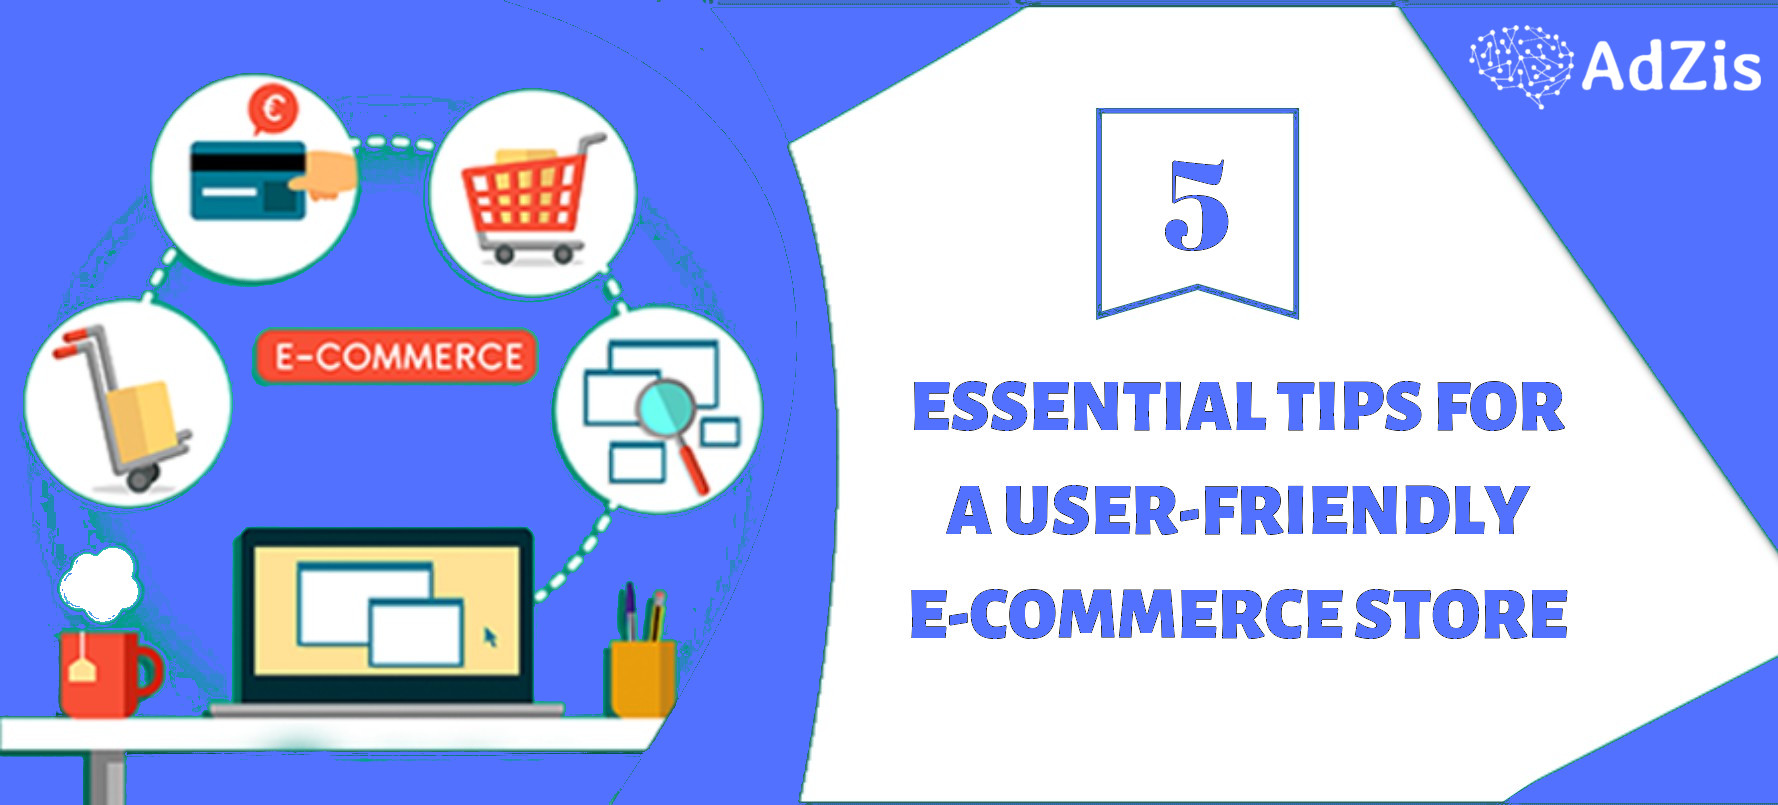 5 Essential Tips for a User Friendly E Com Store - 5 Essential Tips for a User-Friendly E-Commerce Store!